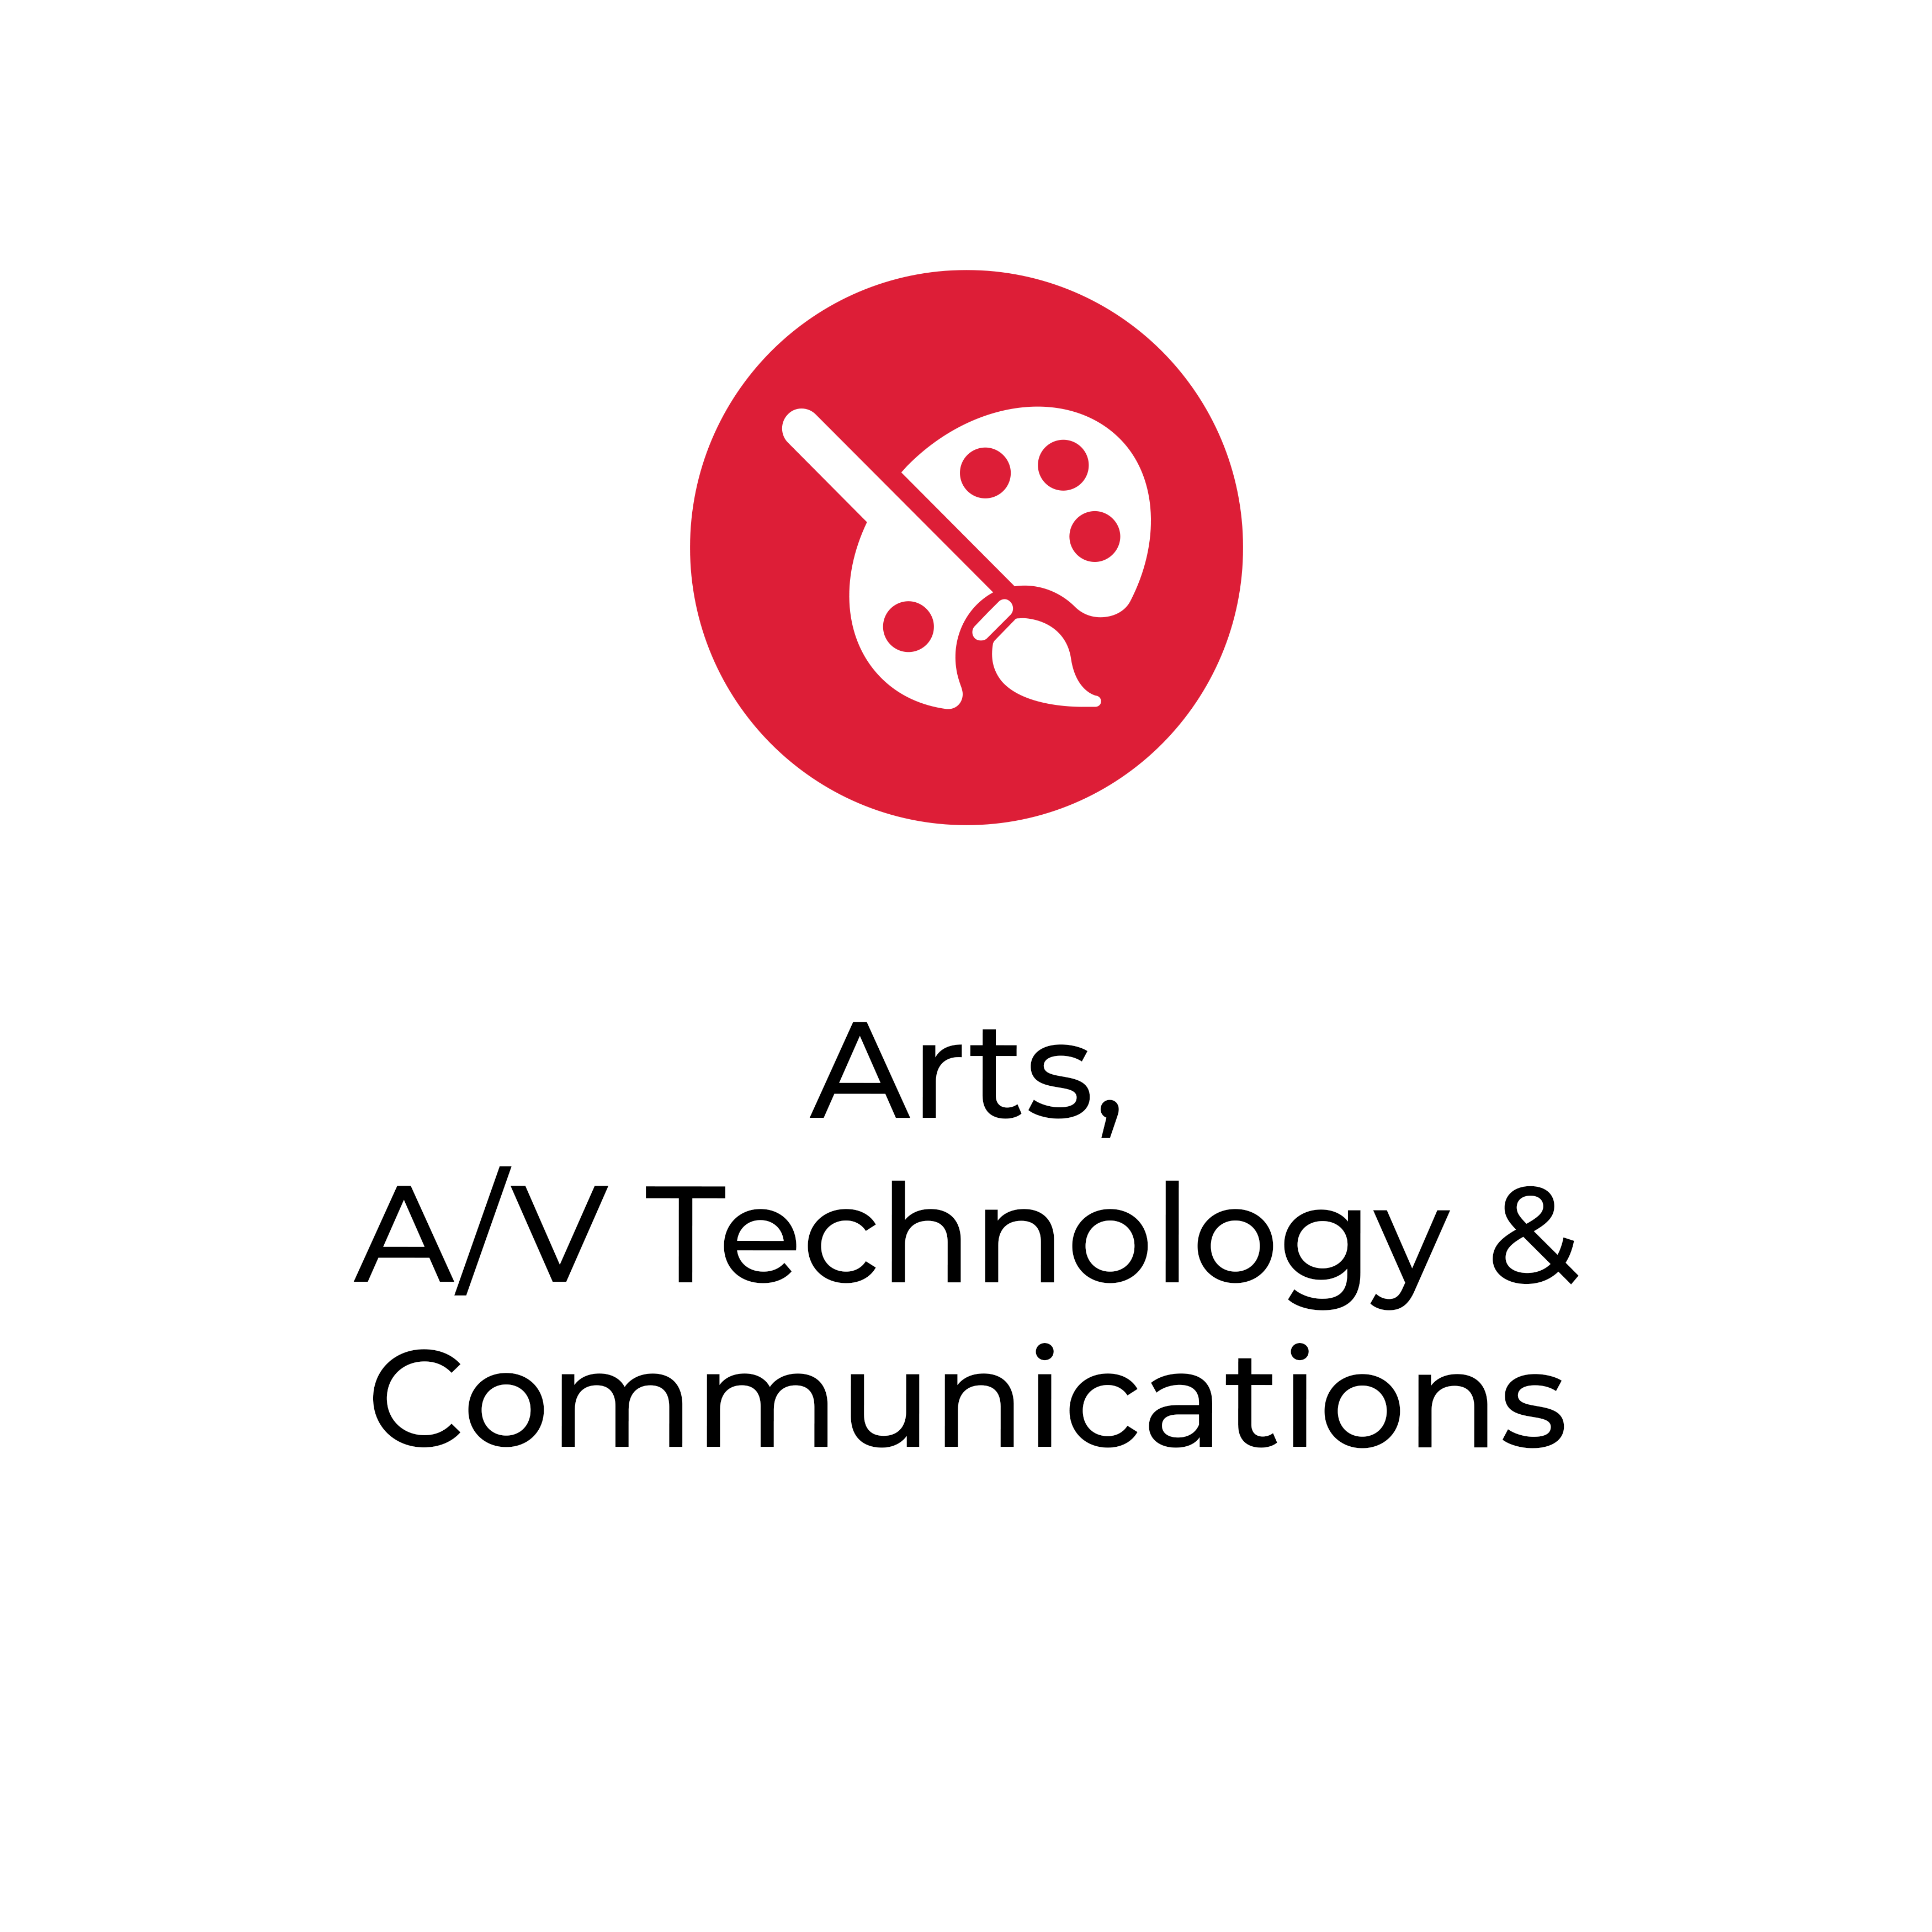 Arts, A&V Technology & Communications